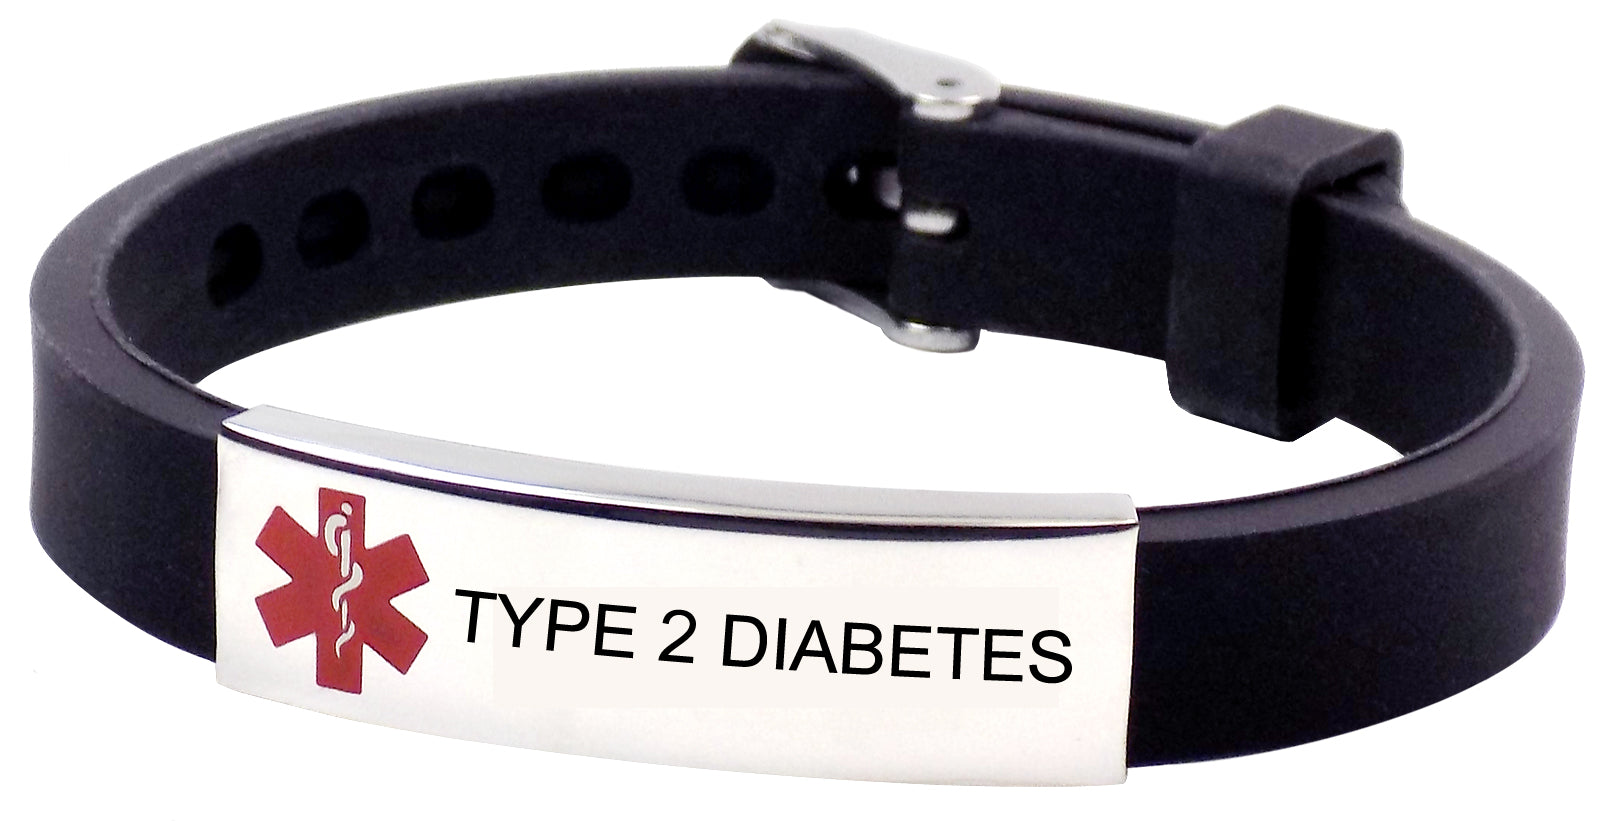 "TYPE 2 DIABETES" Medical alert Wristband Bracelet - Adjustable